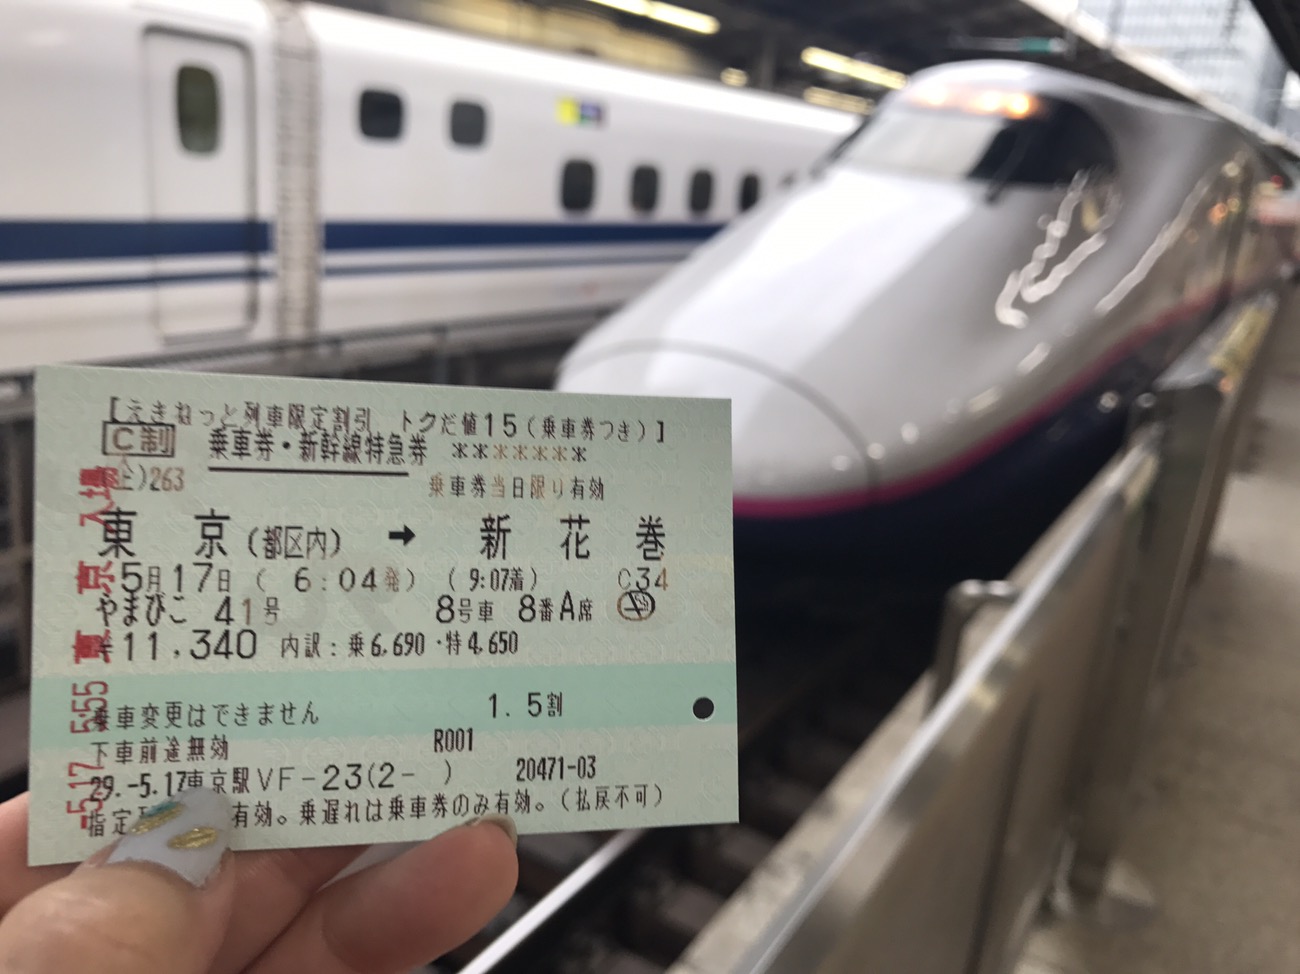 東京 盛岡 新幹線 から 東京〜盛岡の移動手段まとめ【2021年度版】